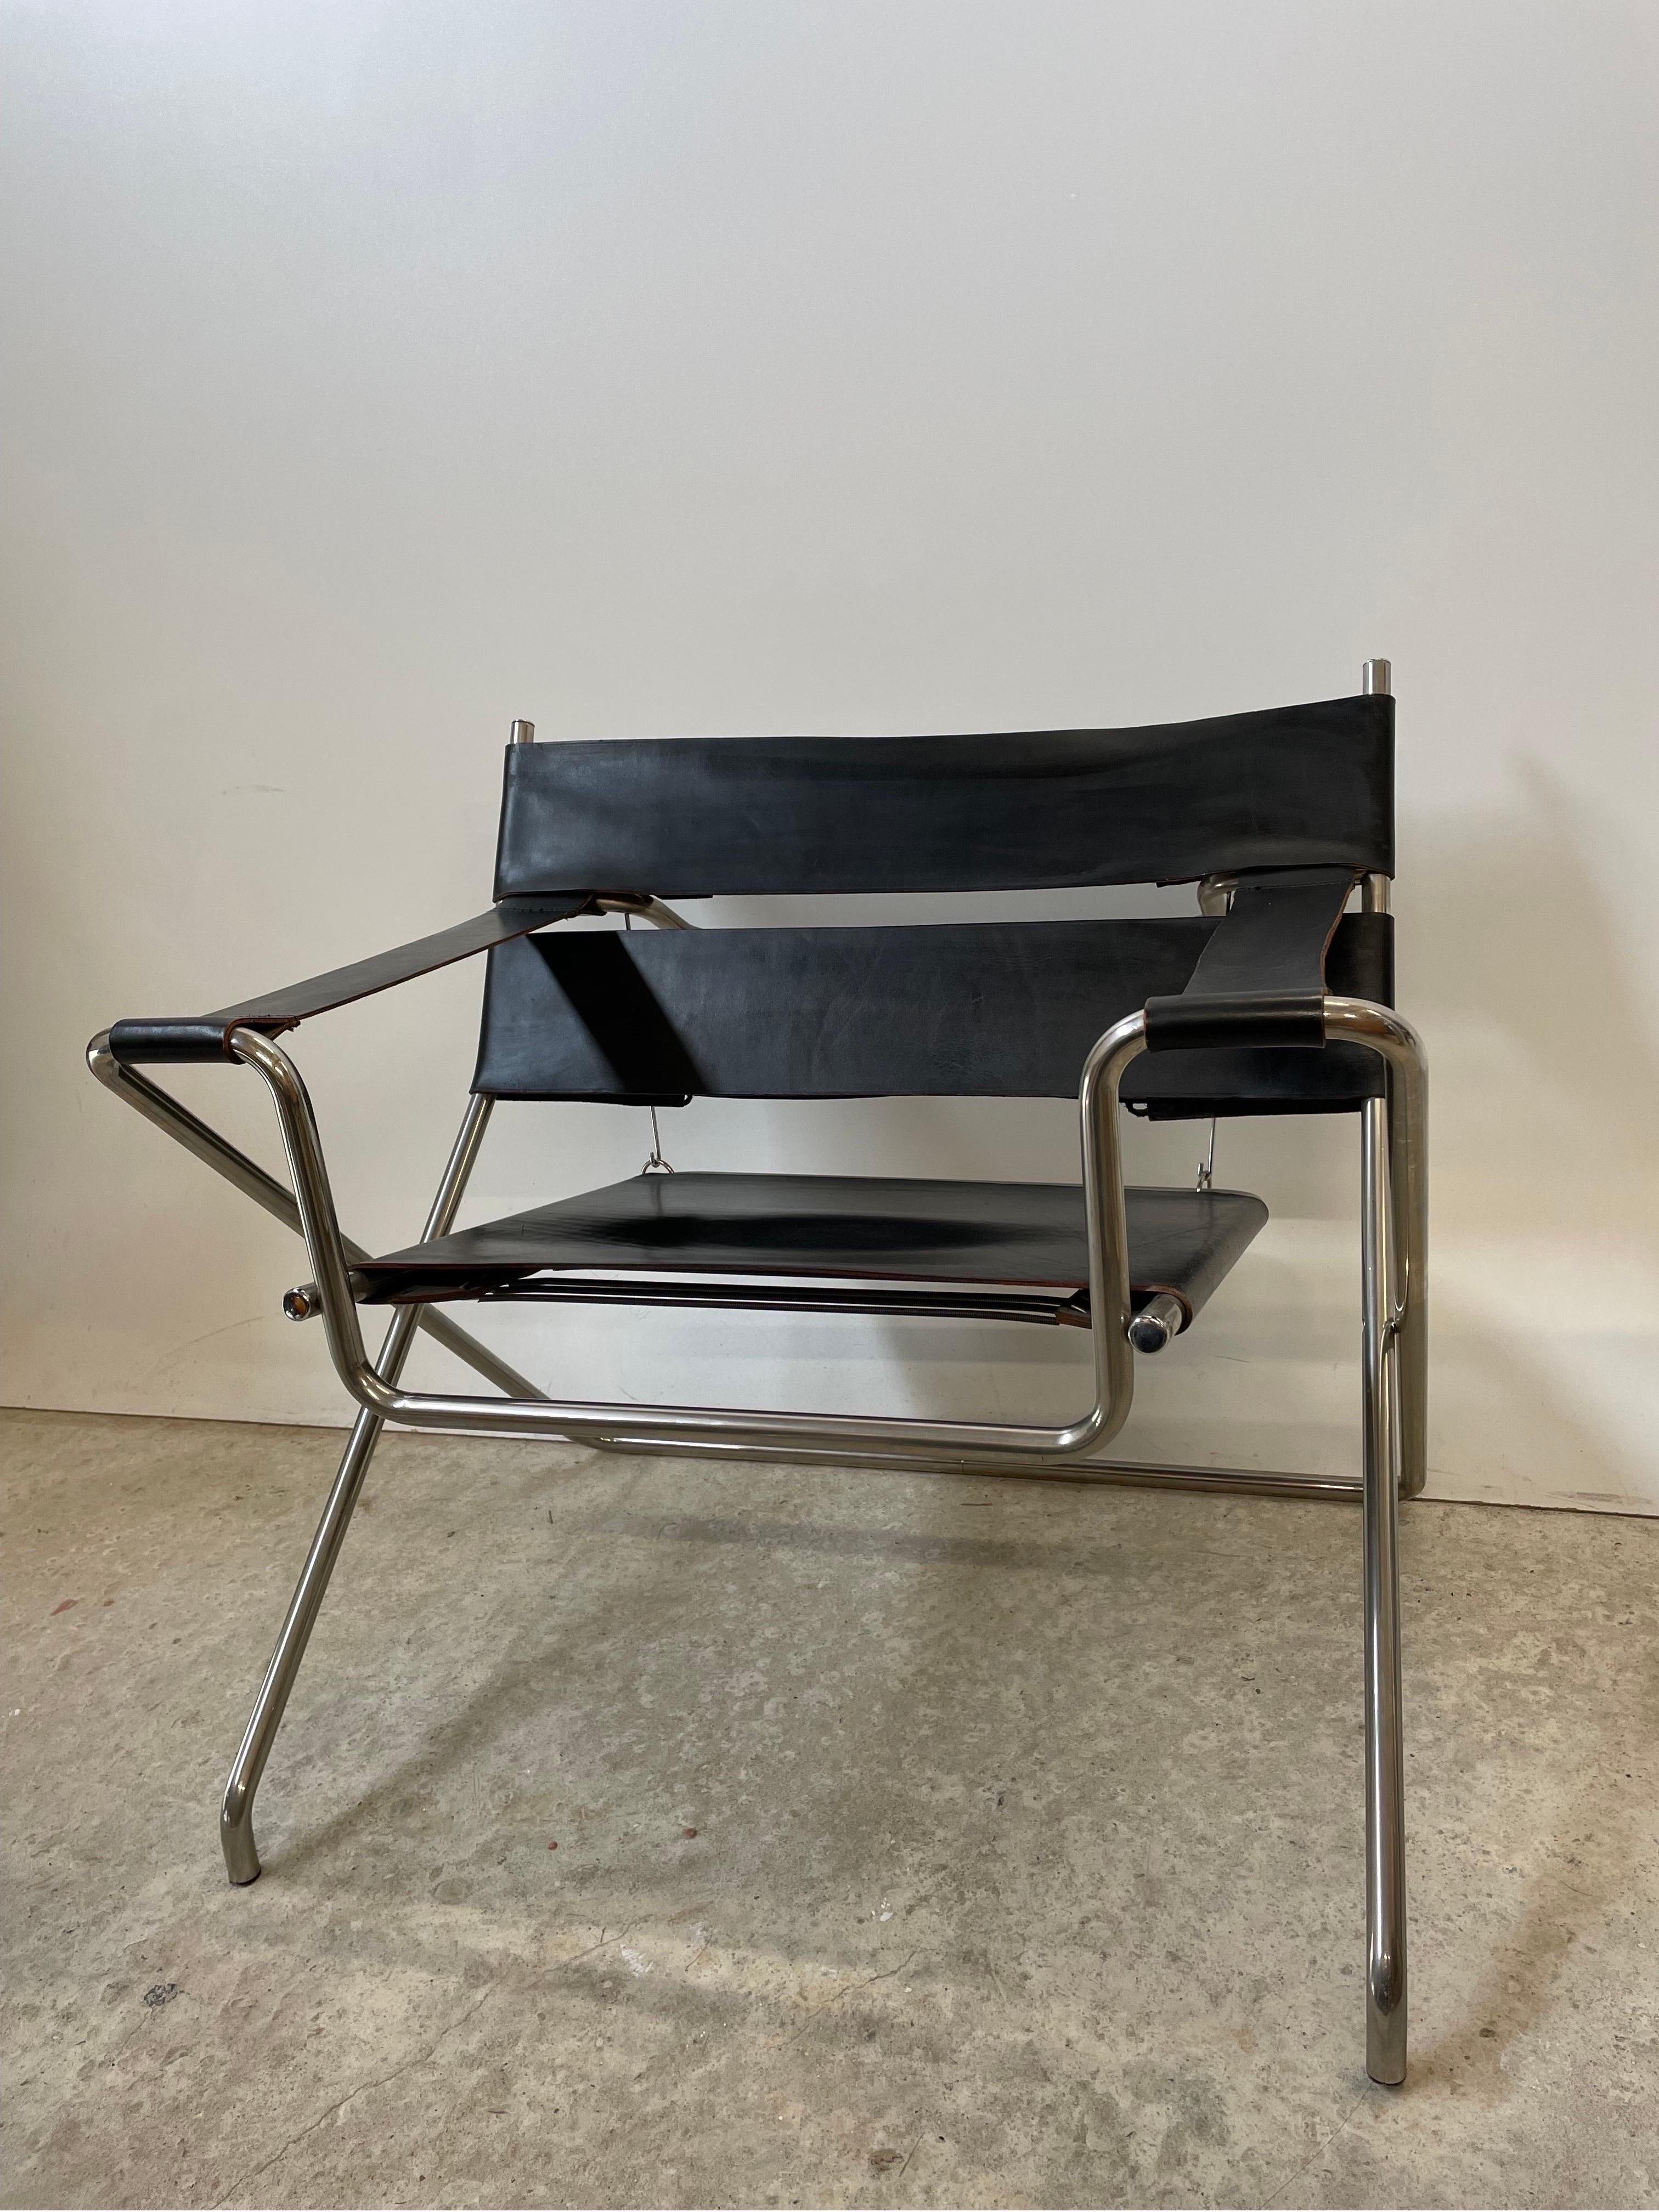 La chaise D4 de Marcel Breuer pour Tecta est l'un des plus beaux classiques du Bauhaus. C'est pourquoi je me réjouis de pouvoir vous offrir ce produit 100% original. 

Cette œuvre de maître zélée est d'une qualité irréprochable. Hergestellt wurde er